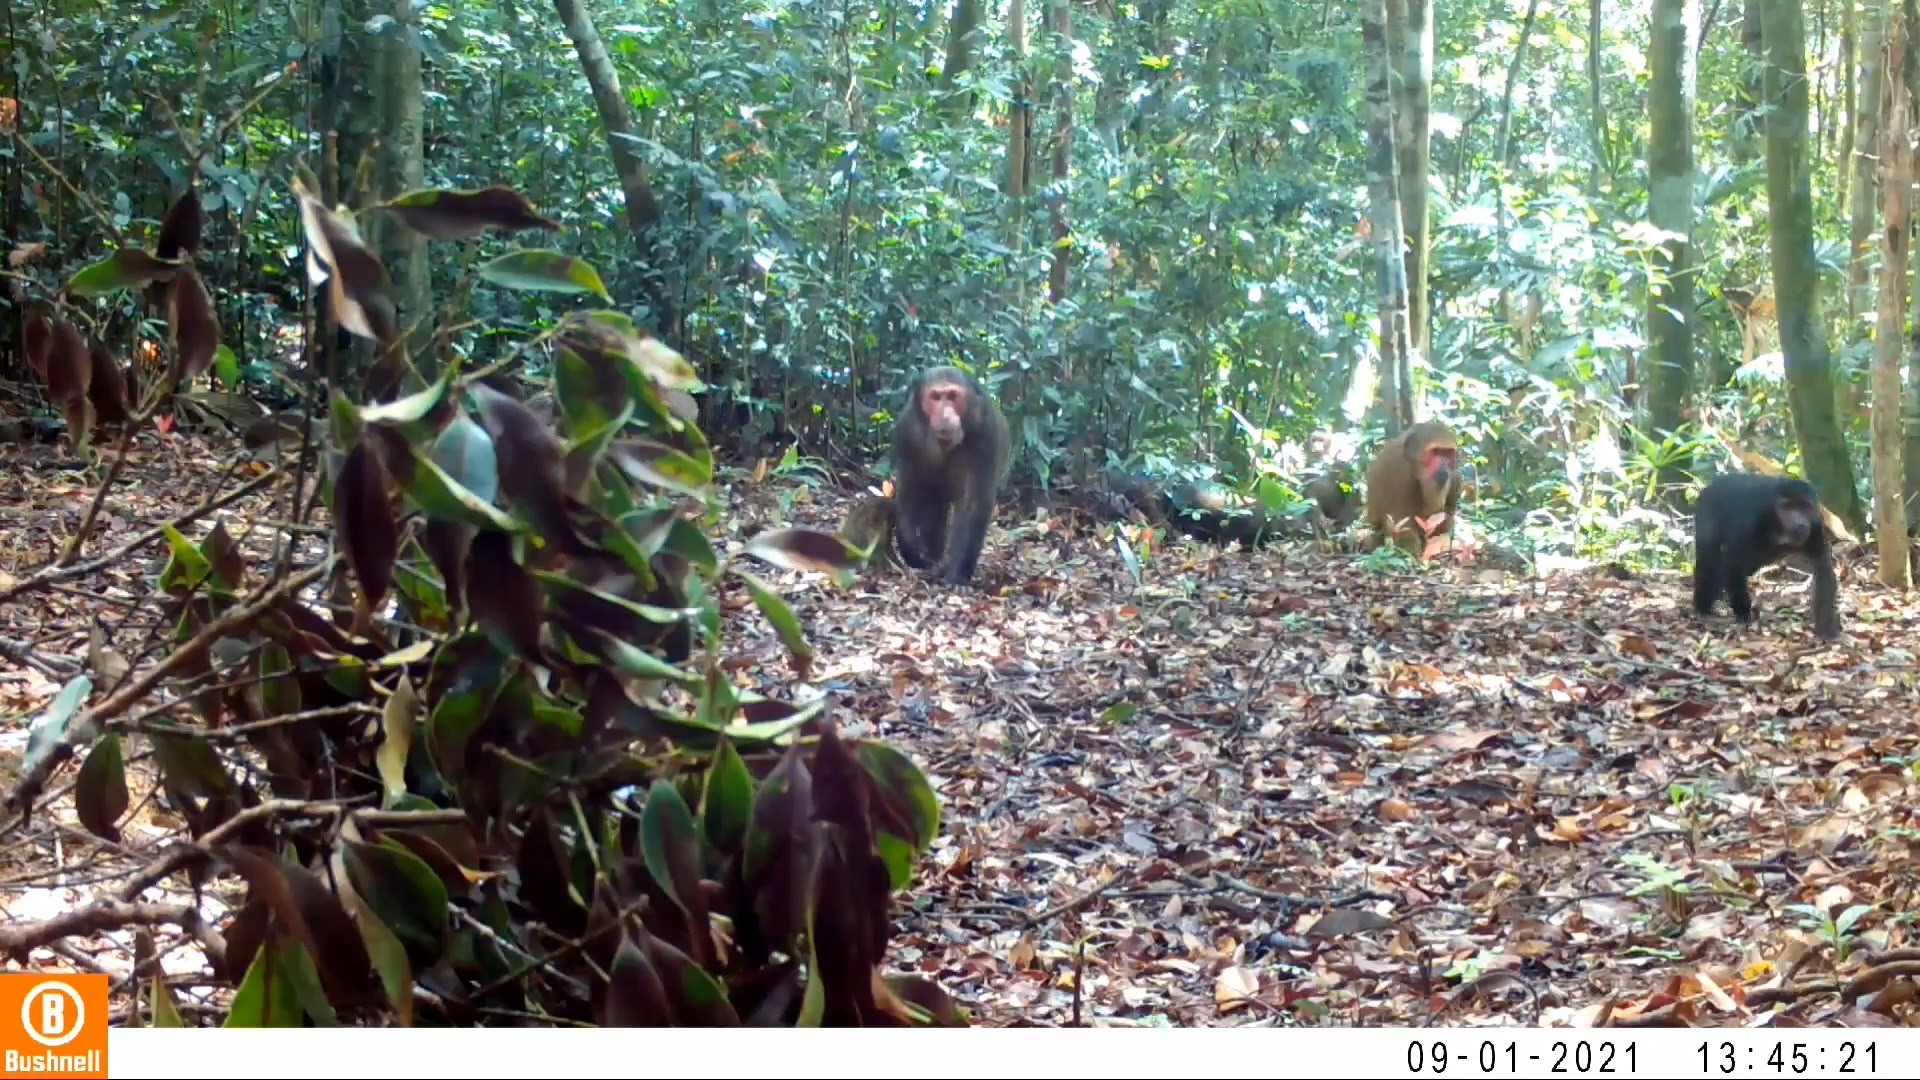 Hình ảnh ghi lại sự xuất hiện của đàn khỉ mặt đỏ quý hiếm tại Khu bảo tồn thiên nhiên Bắc Hướng Hóa – Ảnh: Khu bảo tồn thiên nhiên Bắc Hướng Hóa